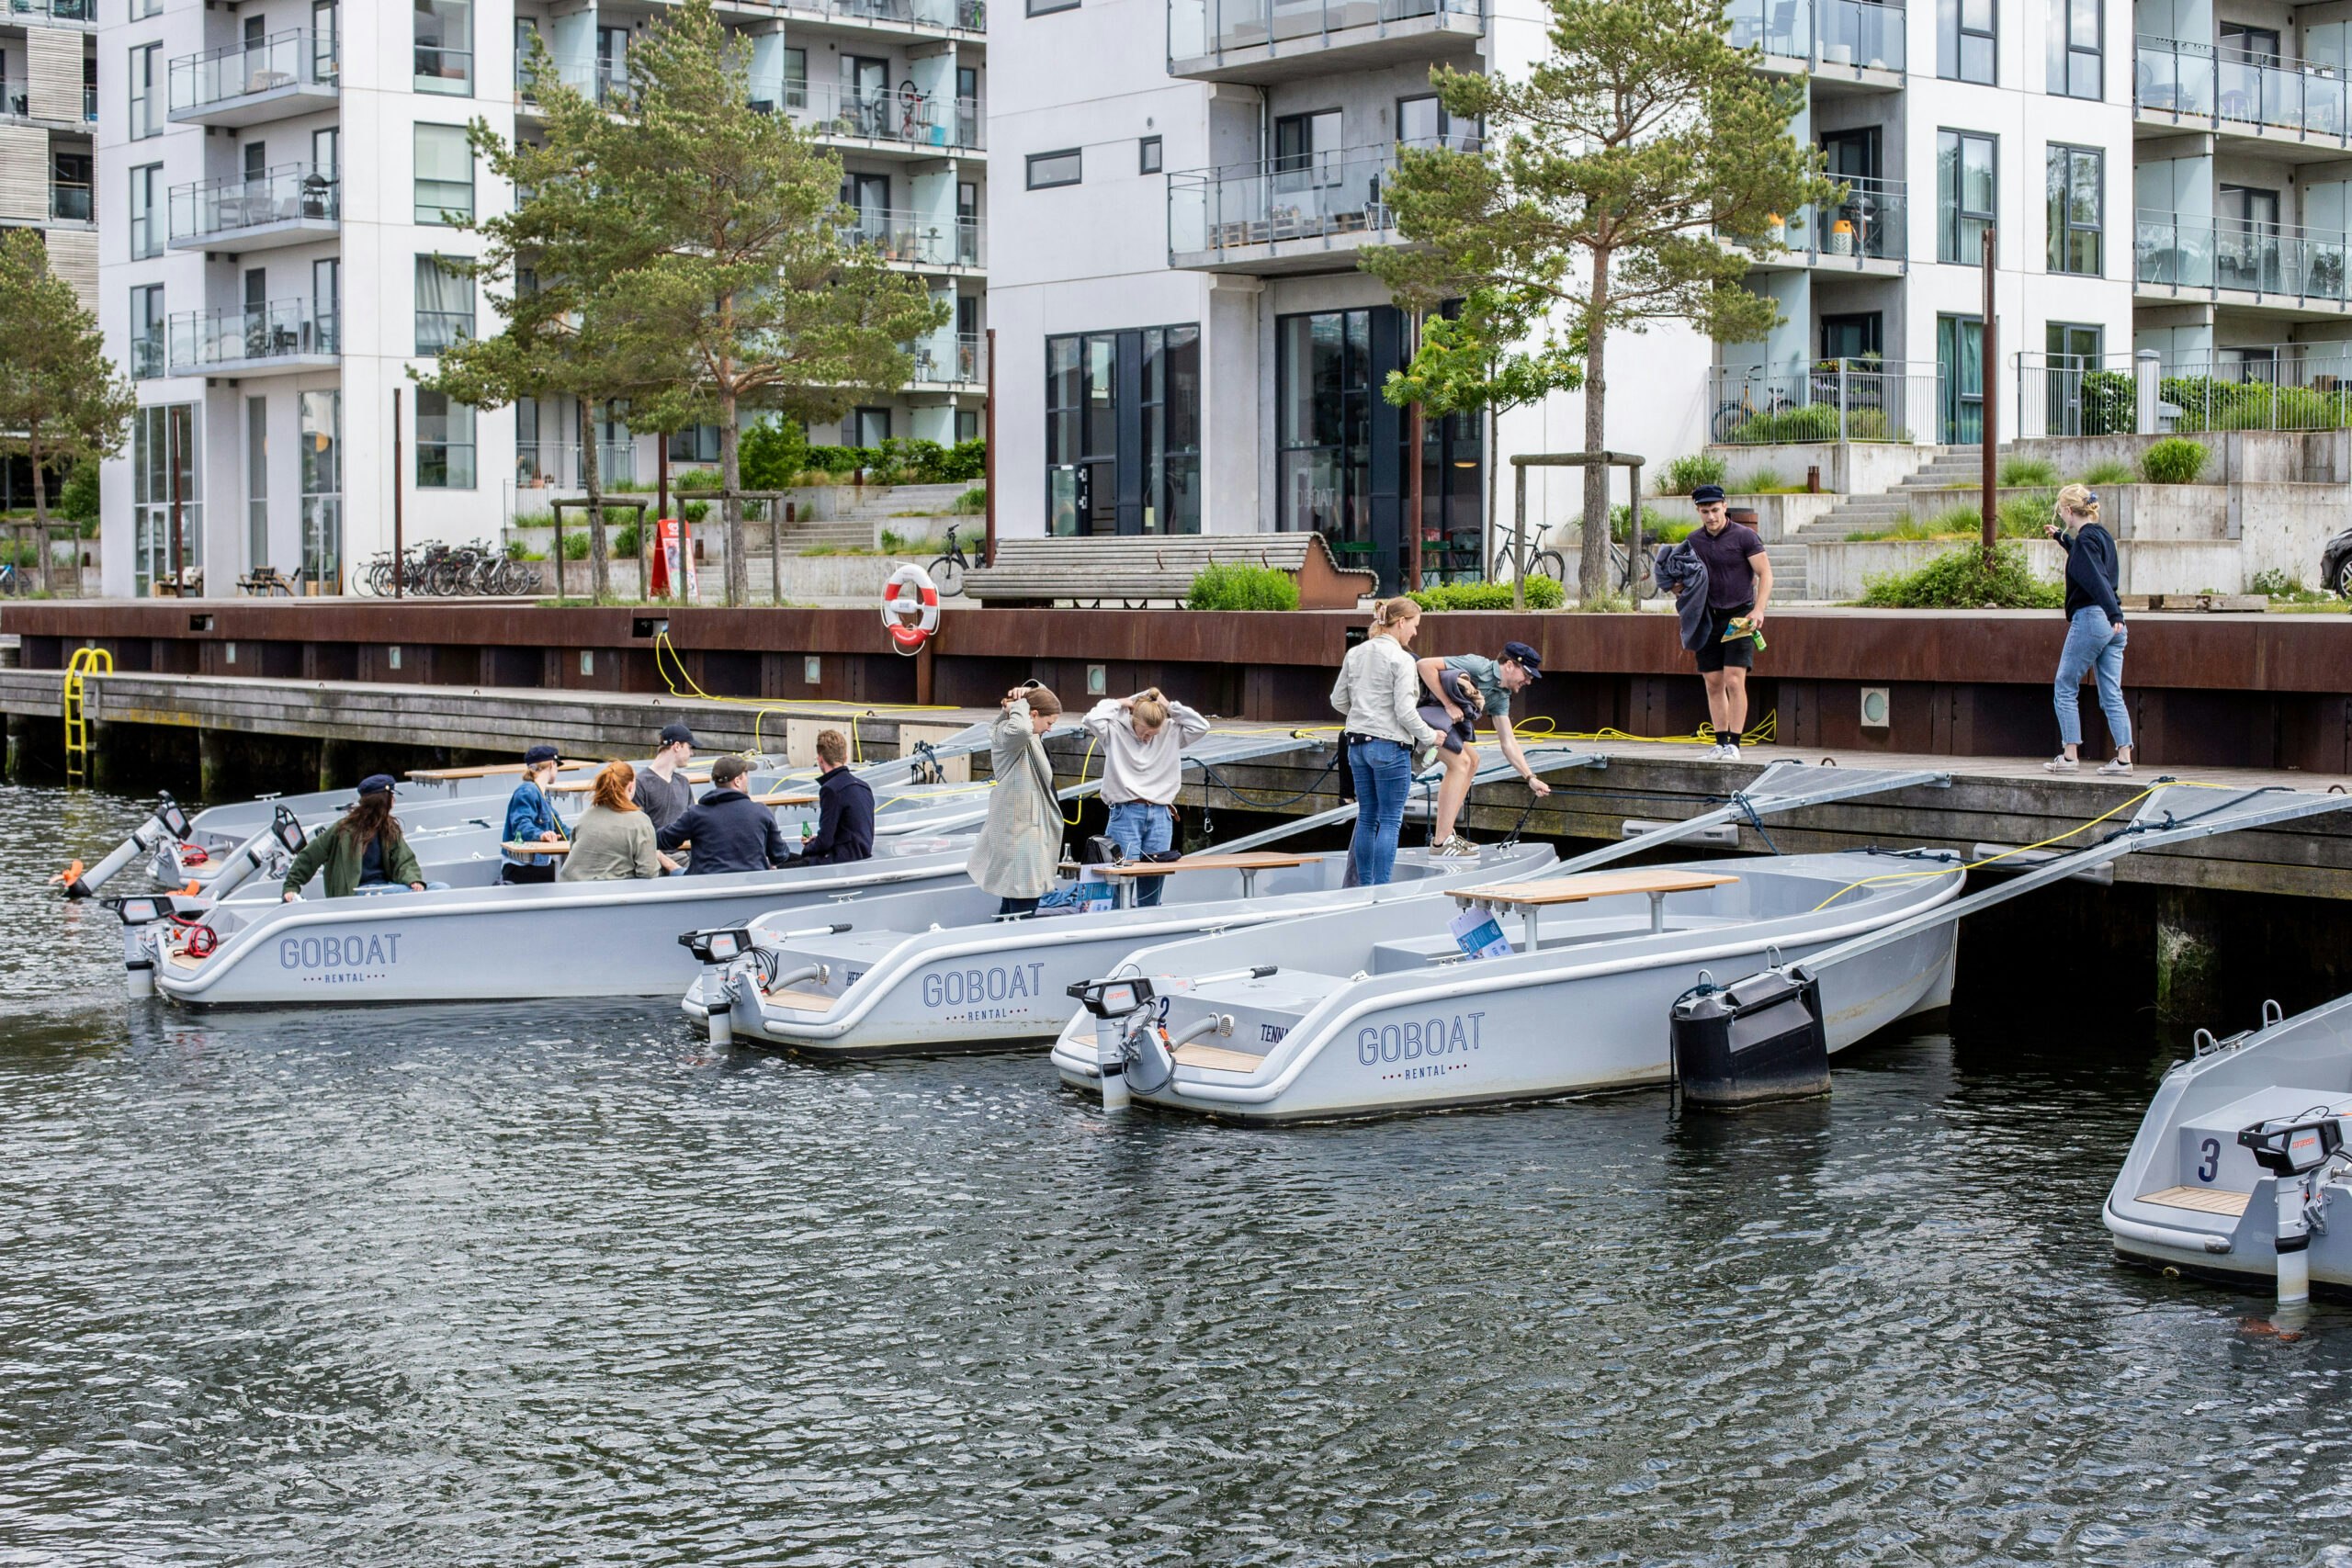 GoBoat dock in Odense